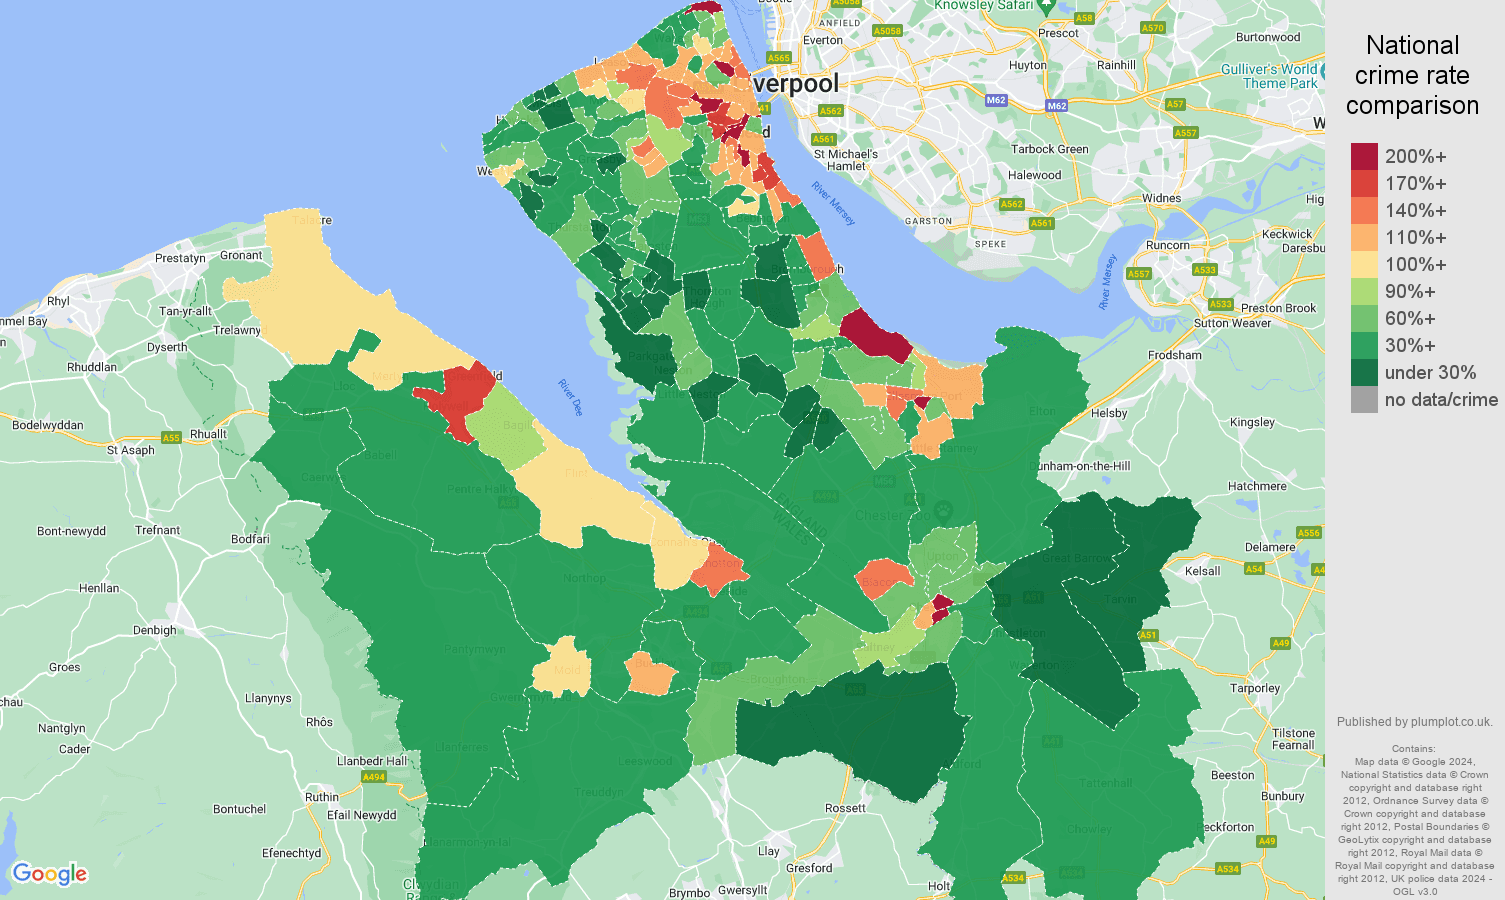 Chester crime rate comparison map